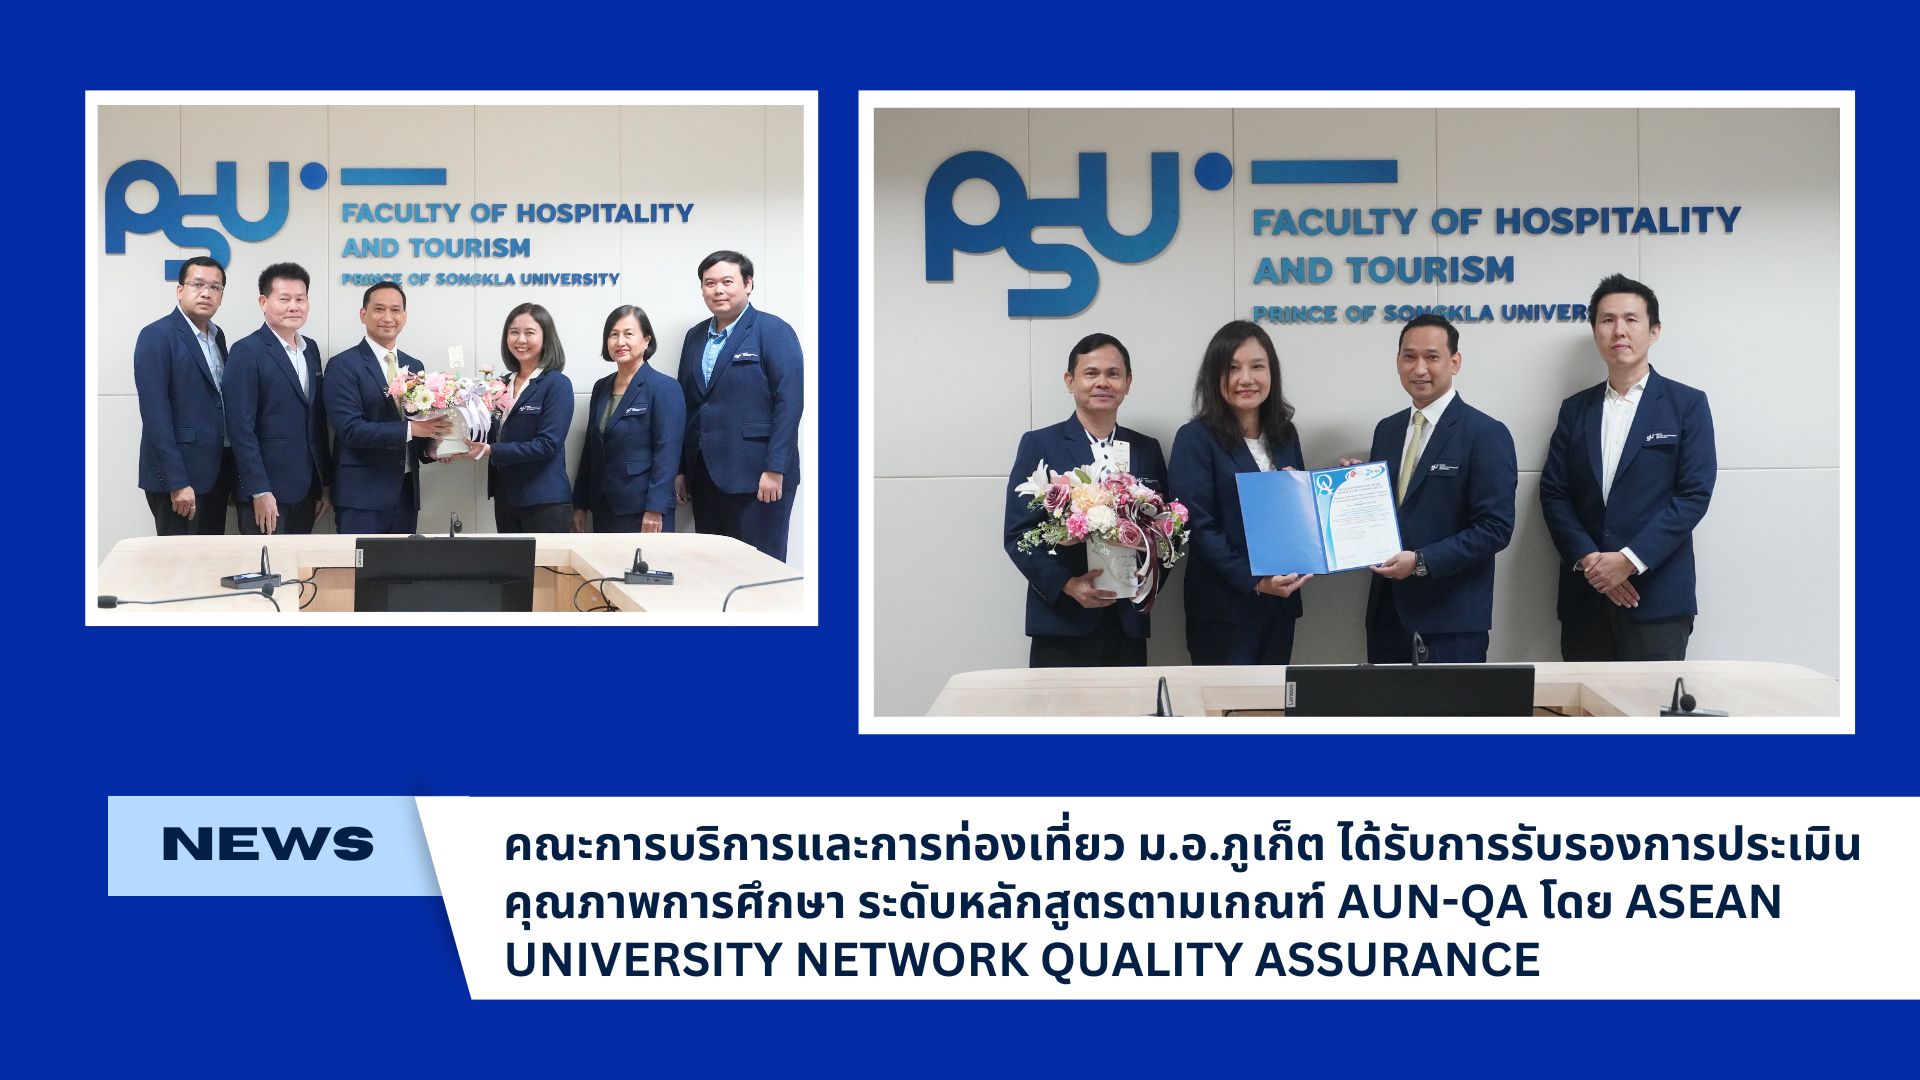 คณะการบริการและการท่องเที่ยว ม.อ.ภูเก็ต ได้รับการรับรองการประเมินคุณภาพการศึกษาระดับหลักสูตรตามเกณฑ์ AUN-QA โดย ASEAN UNIVERSITY NETWORK QUALITY ASSURANCE